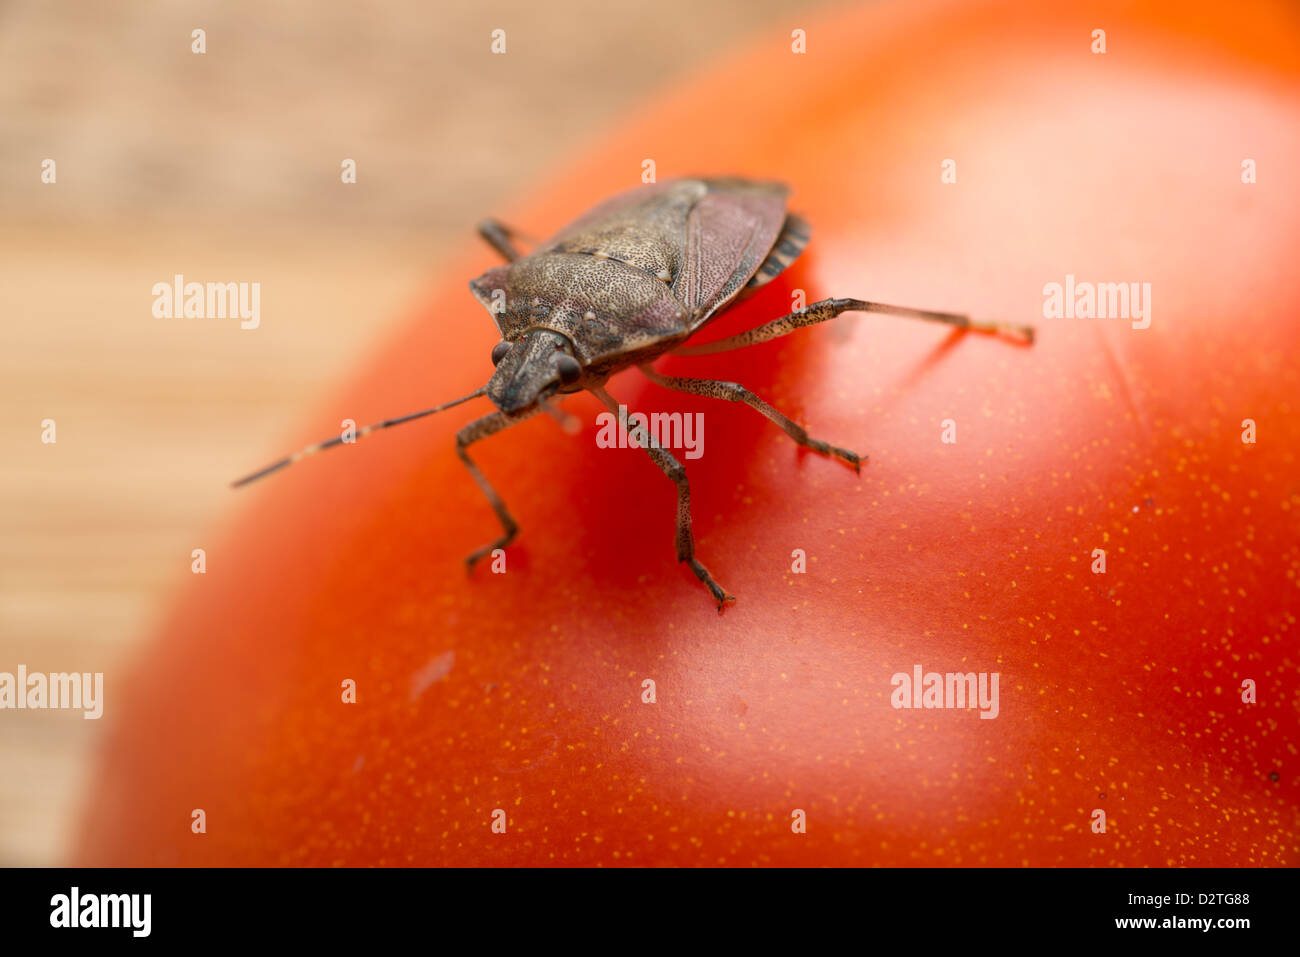 Halys Halyomorpha, il marrone marmorated stink bug, stink bug su un pomodoro Foto Stock